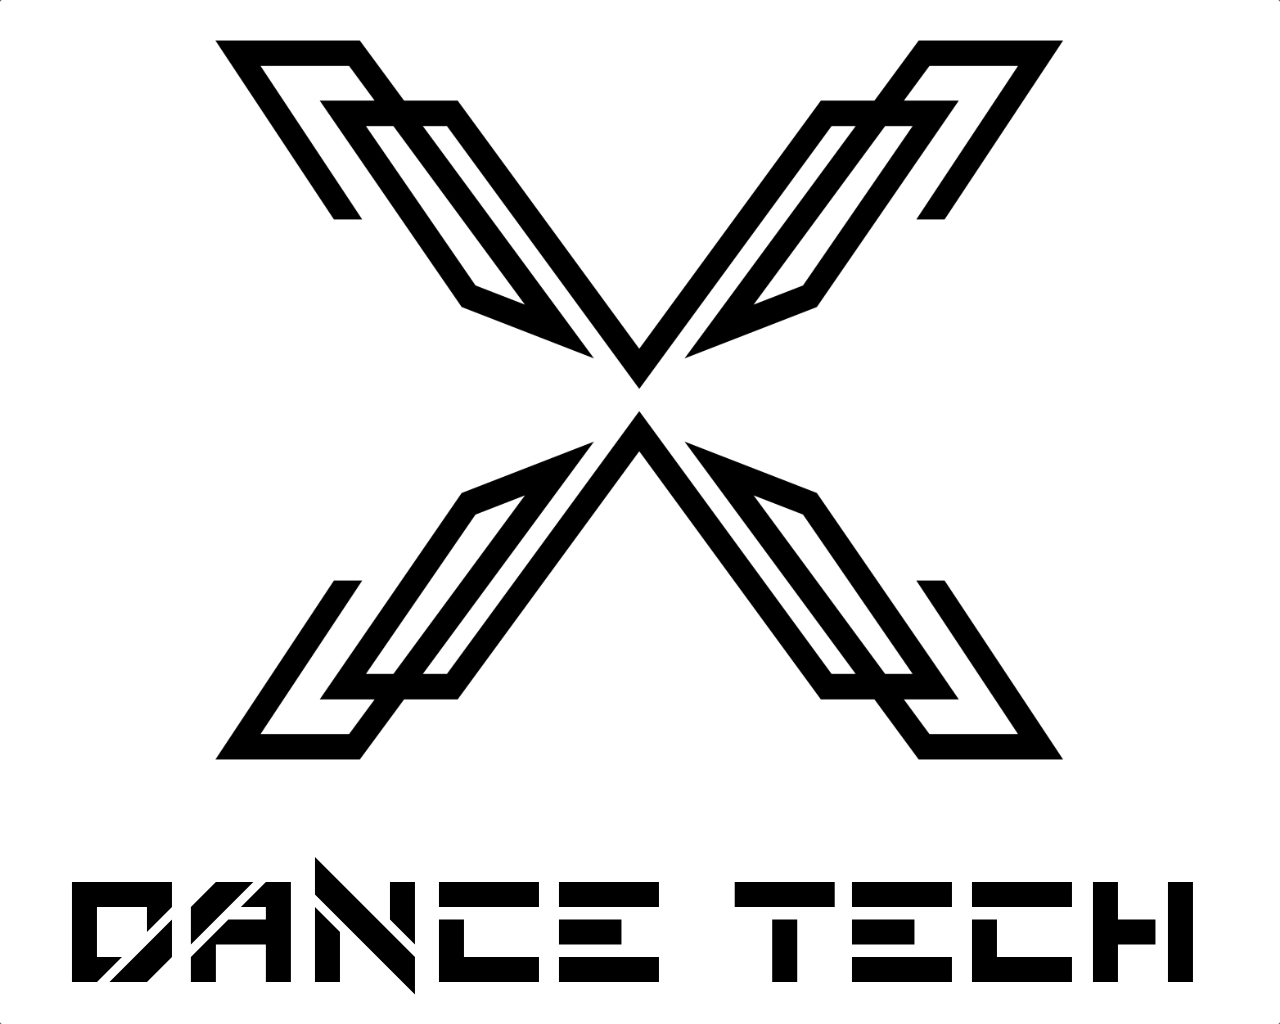 Dance Technique logo